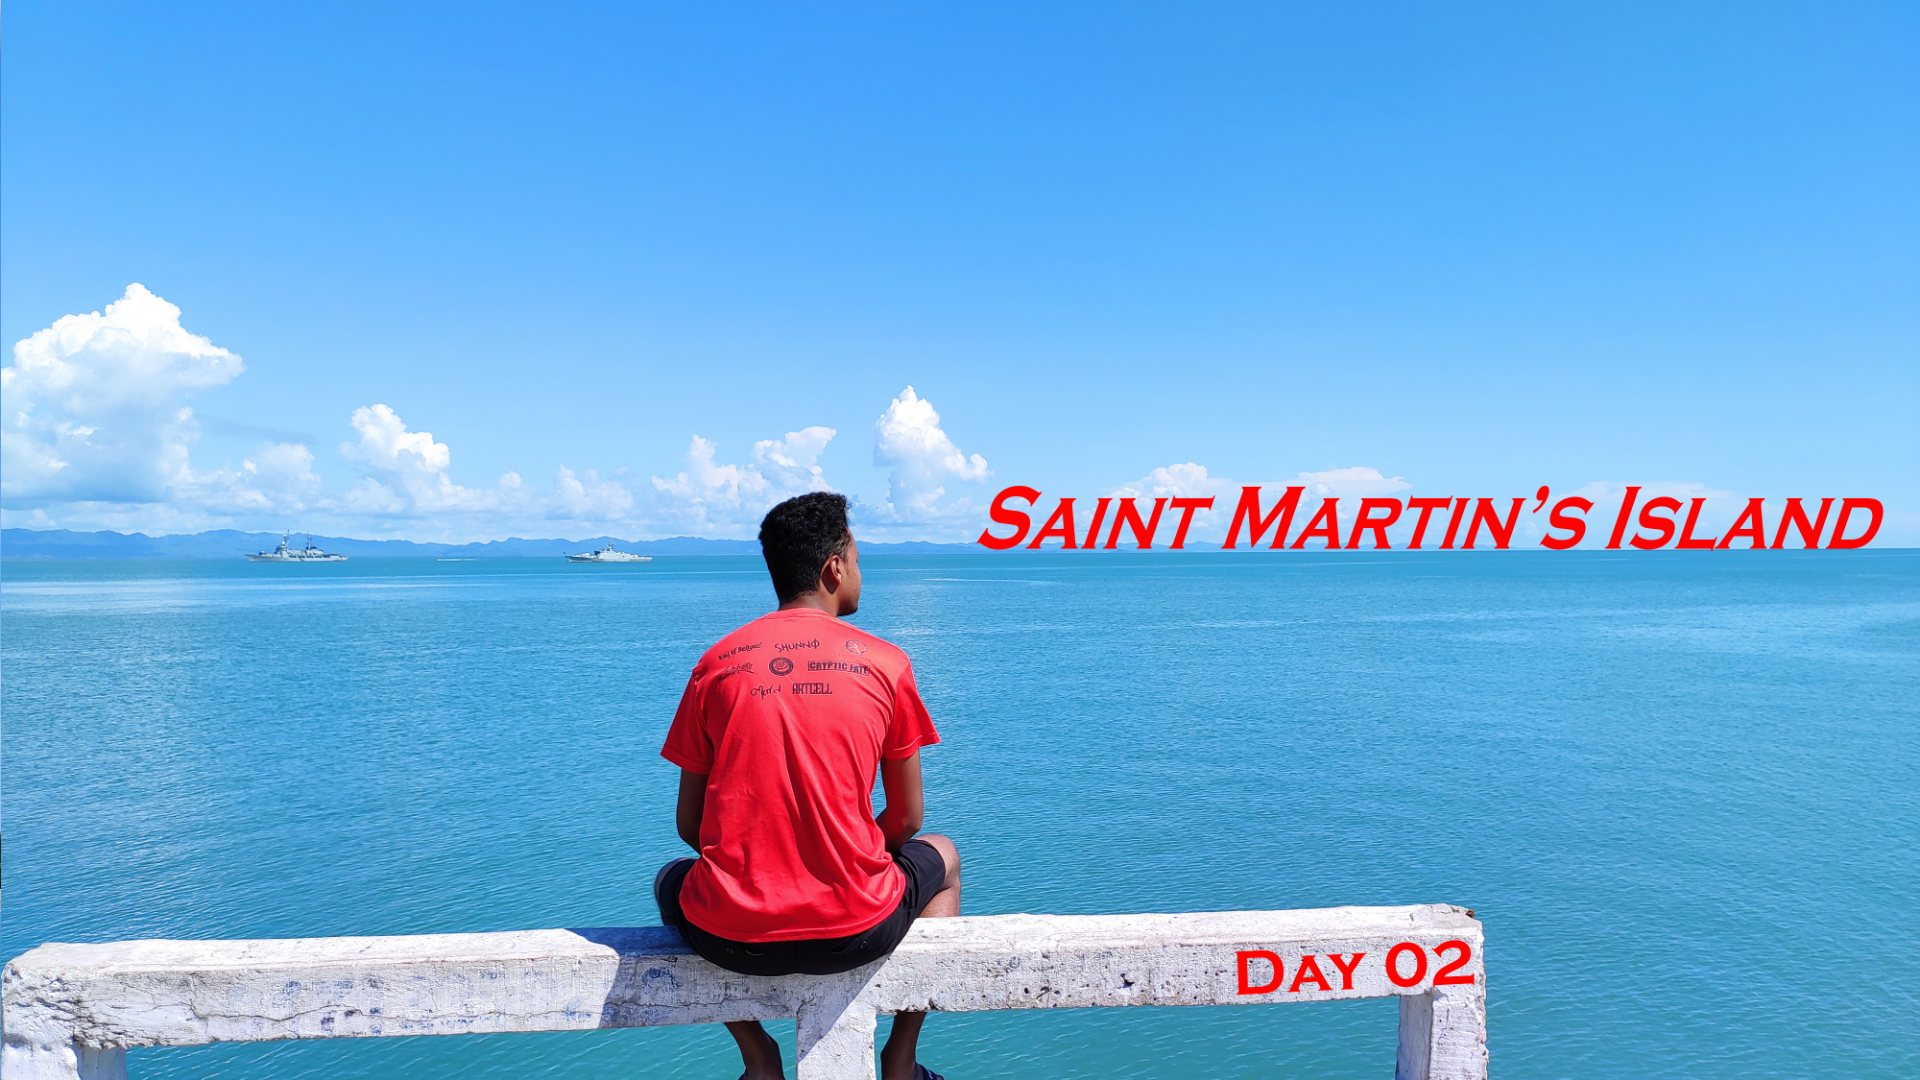 Saint Martin's Island: Day 02.